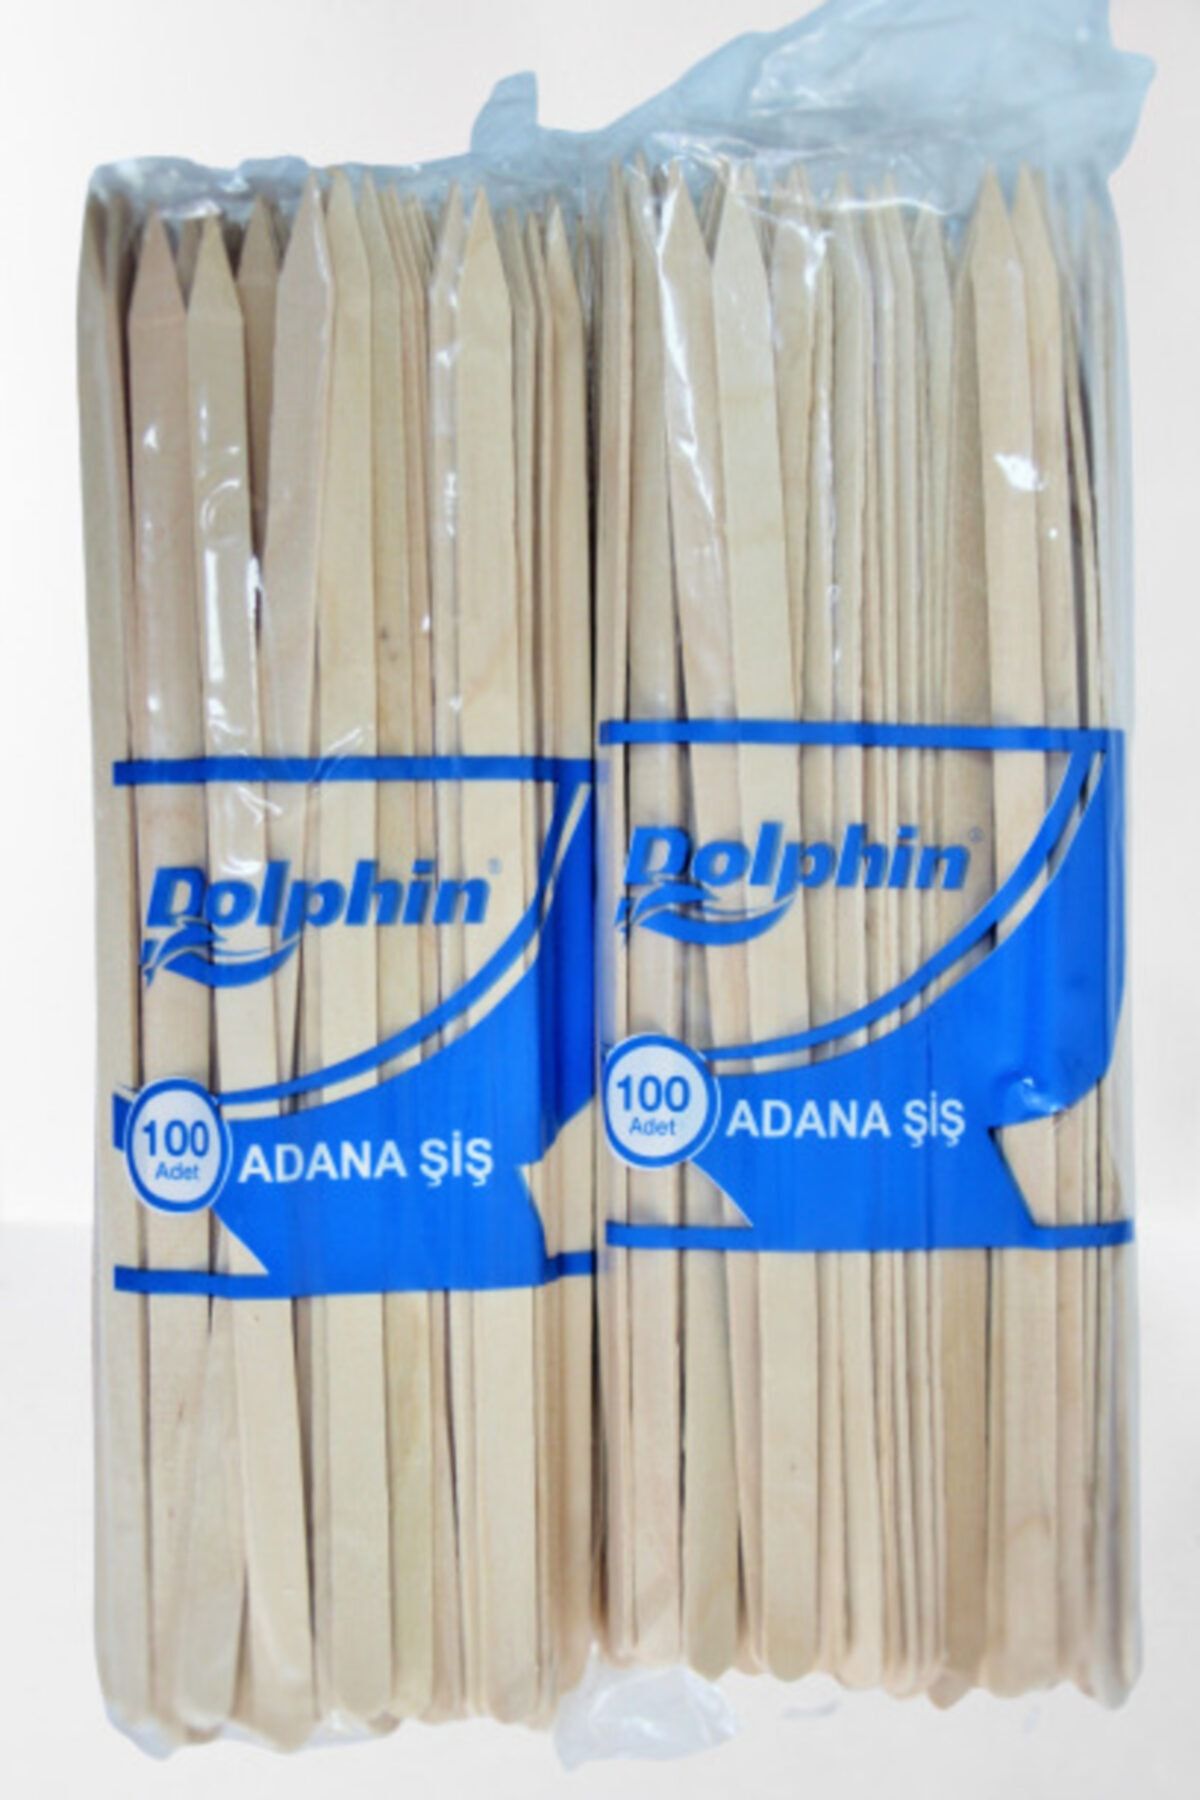 Dolphin Dolphim Adana Şiş 100 Lü 2"li Paket